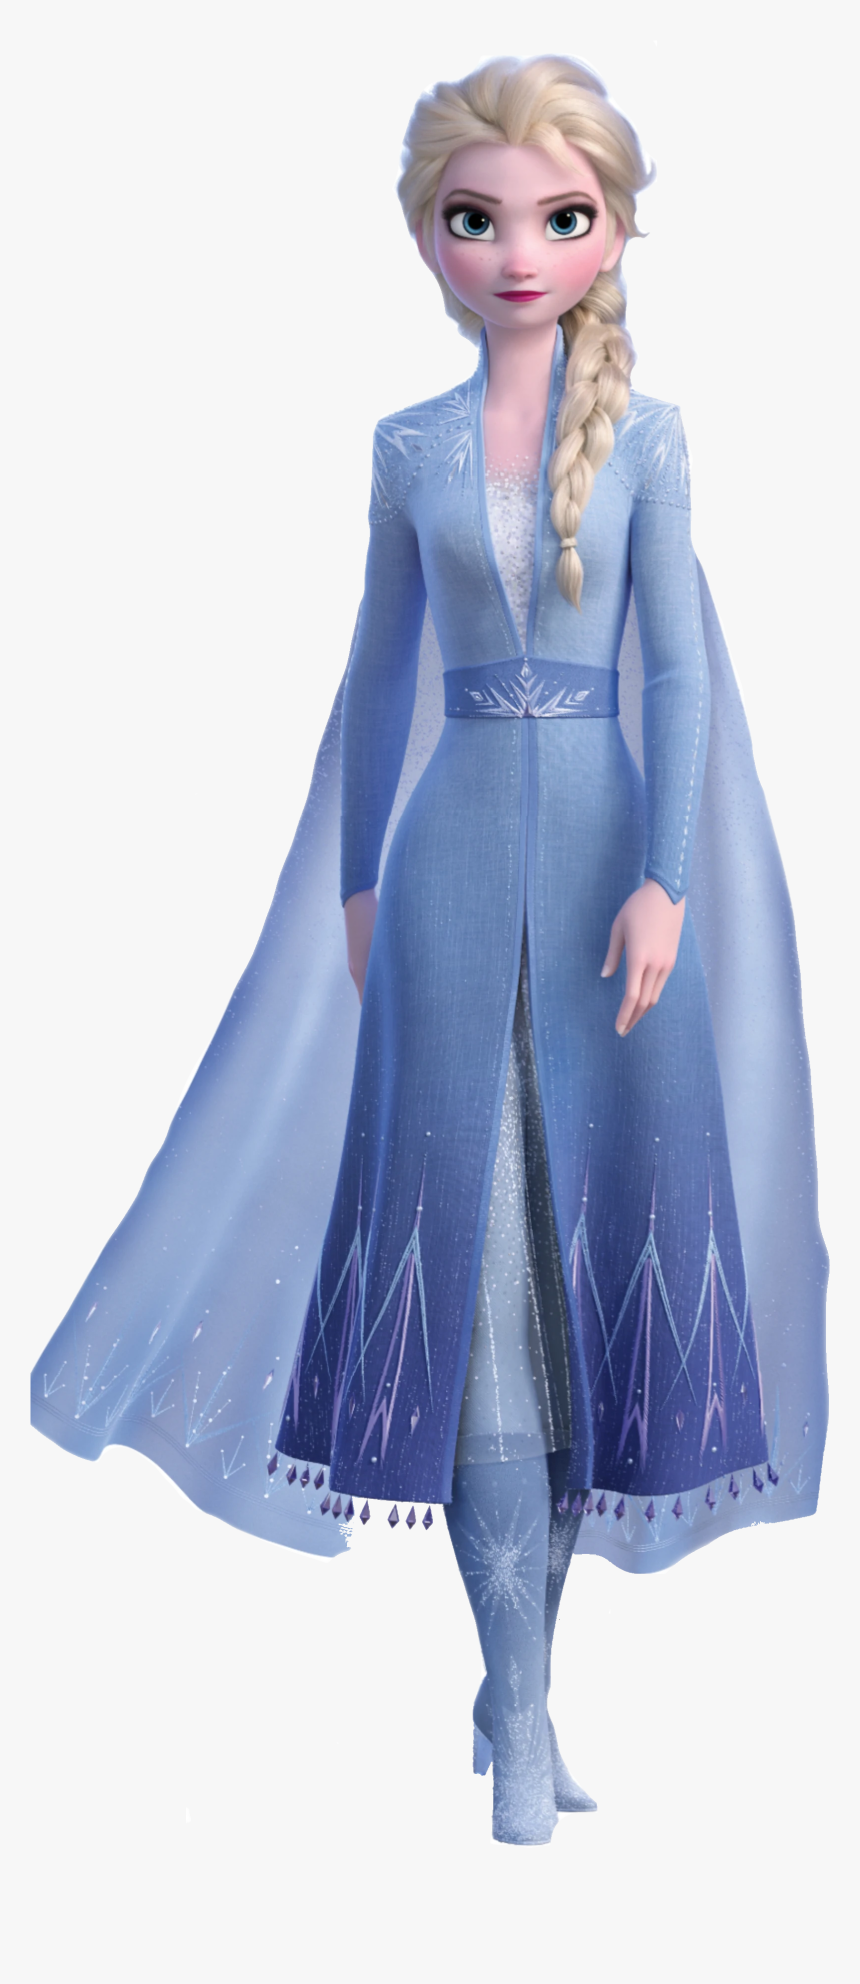 Happy St - Patrick& - Queen Elsa Frozen 2, HD Png Download, Free Download